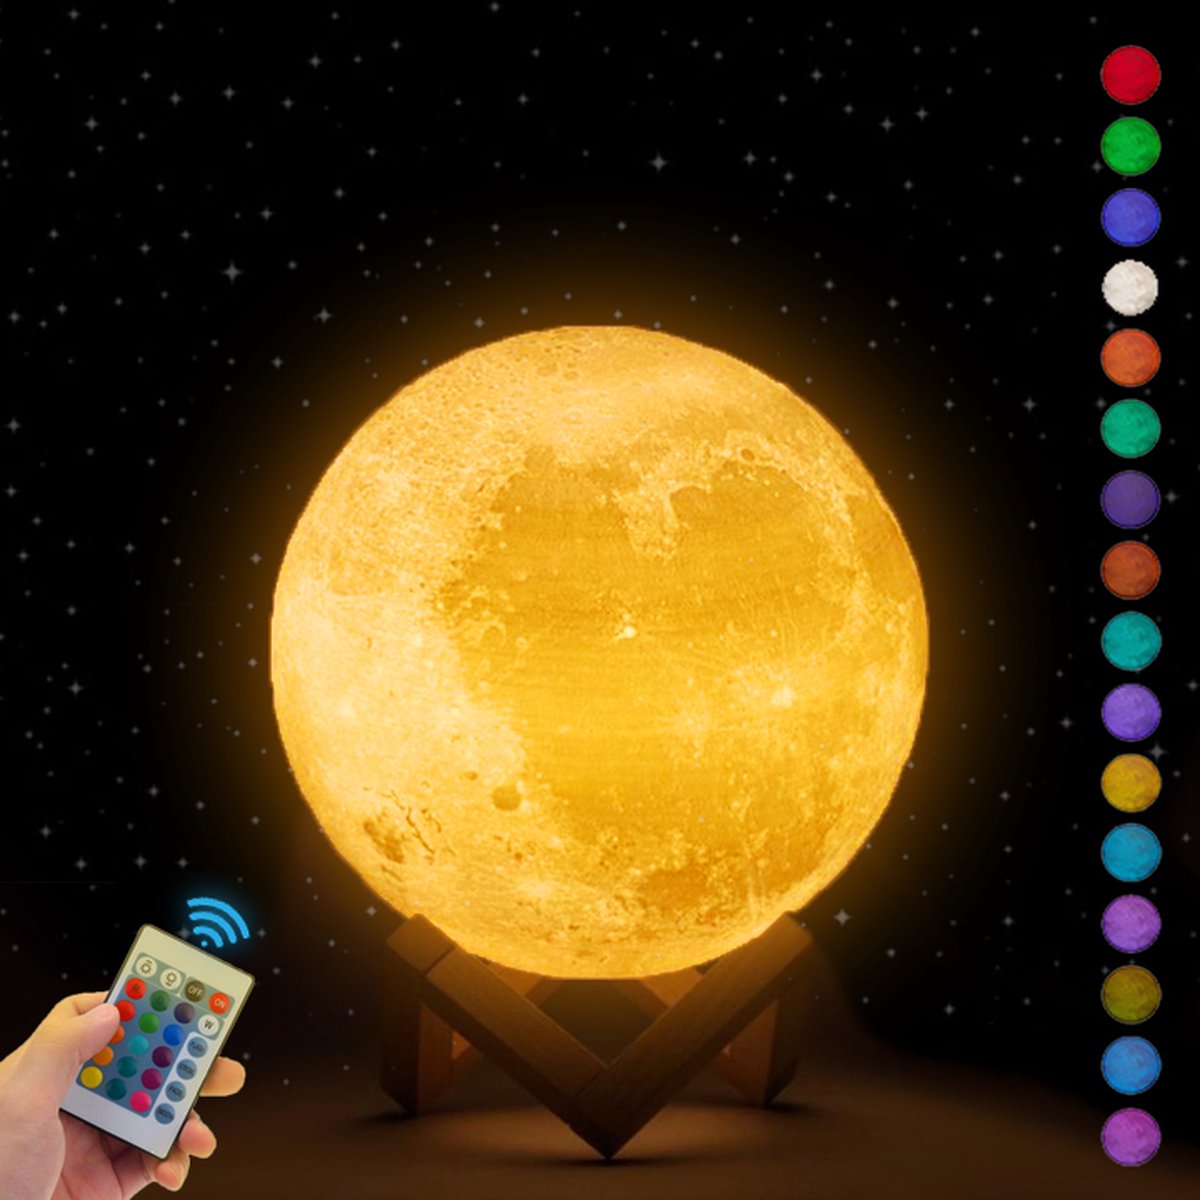 STARLYGHT Maanlamp 3D Tafellamp - 15cm Maan Lamp - Maan Lampje Babykamer - Nachtlampje Kinderen - USB oplaadbaar - 16 Dimbare LED Kleuren - Kerstdecoratie - Kerst Tafellamp - Afstandsbediening